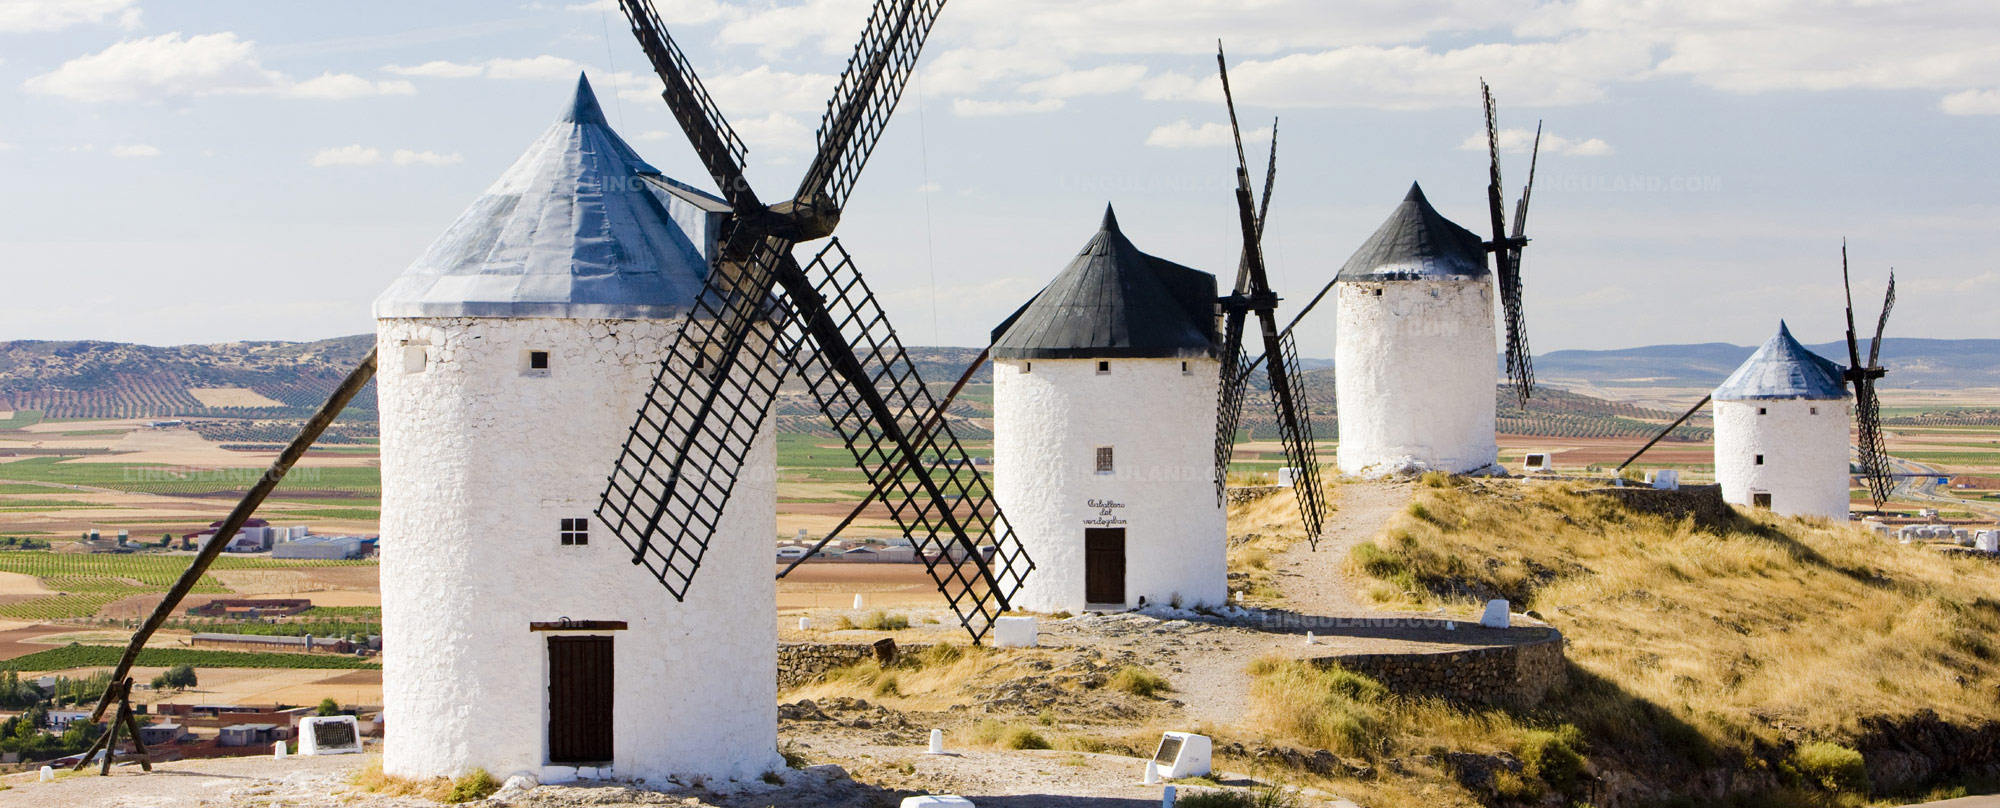 Ветряные мельницы Дон Кихота в Испании